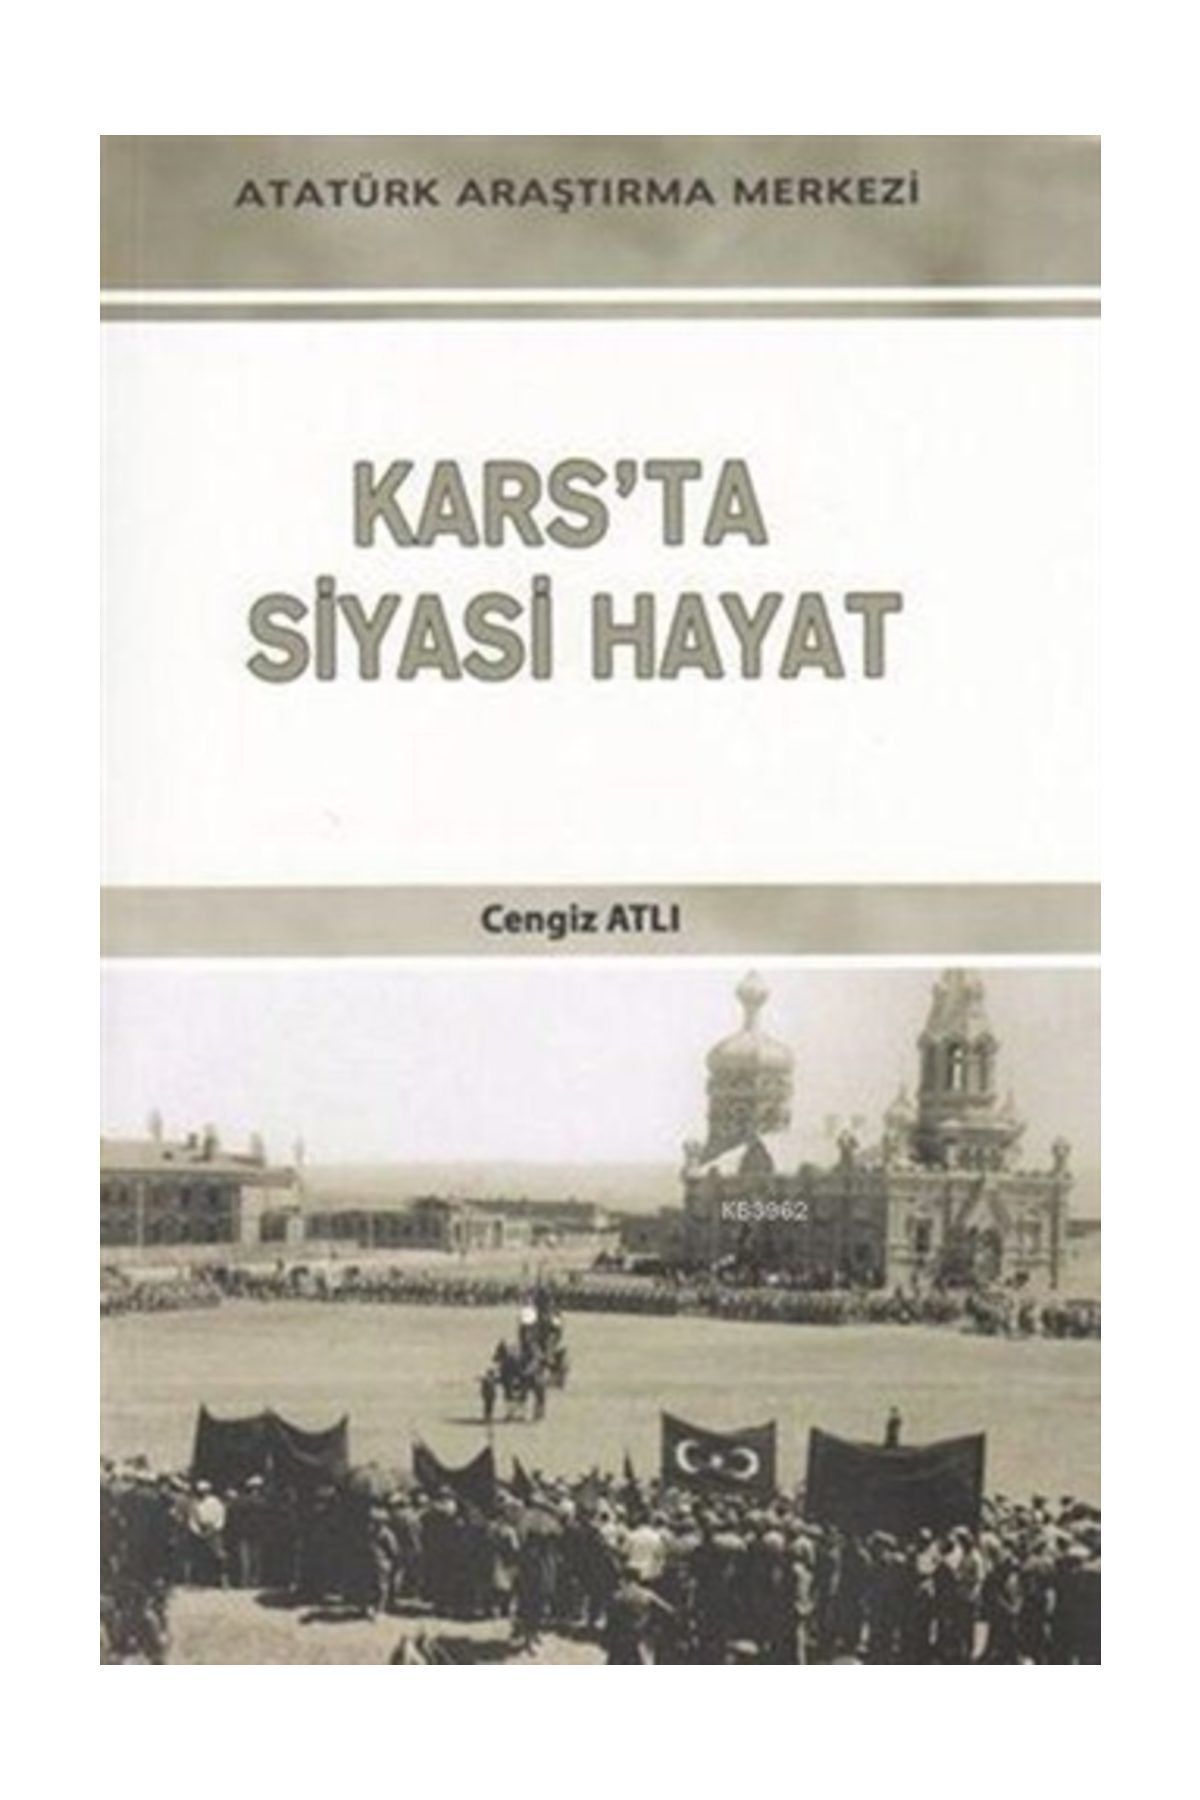 Atatürk Araştırma Merkezi Kars'ta Siyasi Hayat - Cengiz Atlı